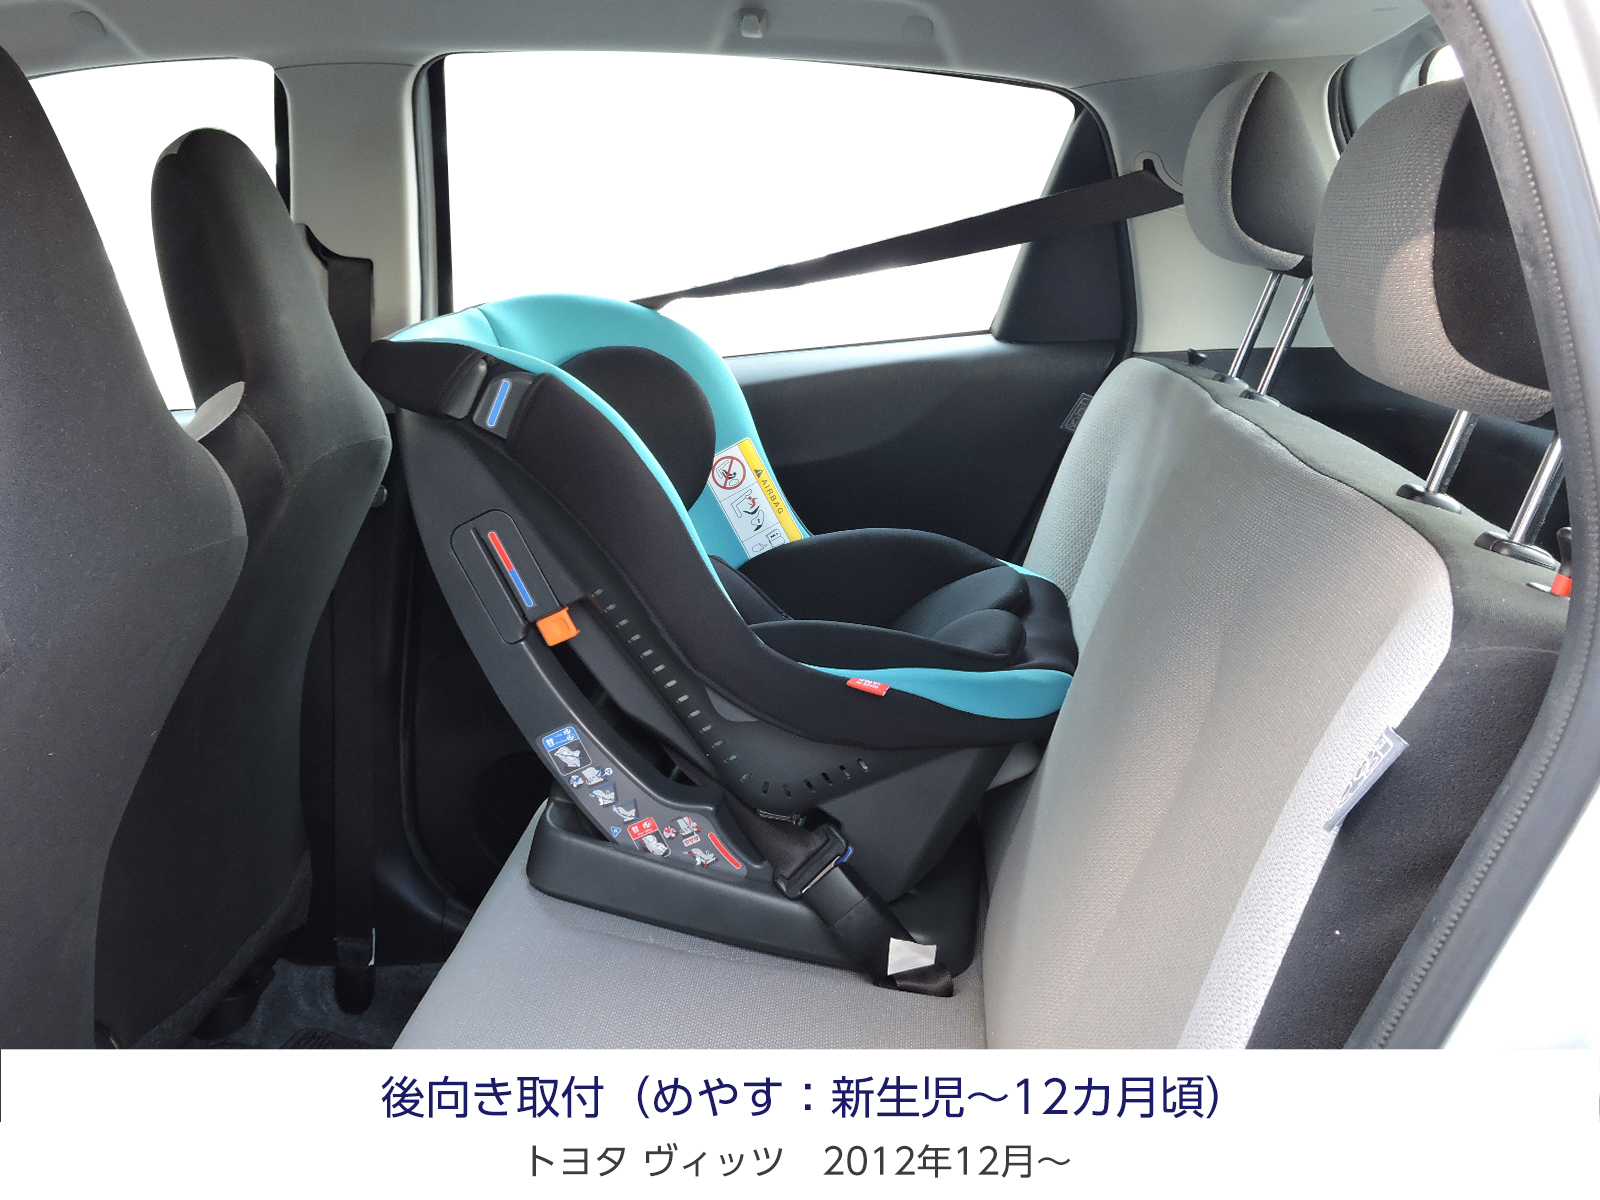 リーマン シートベルト固定式チャイルドシート 新生児〜 チャイルドシート